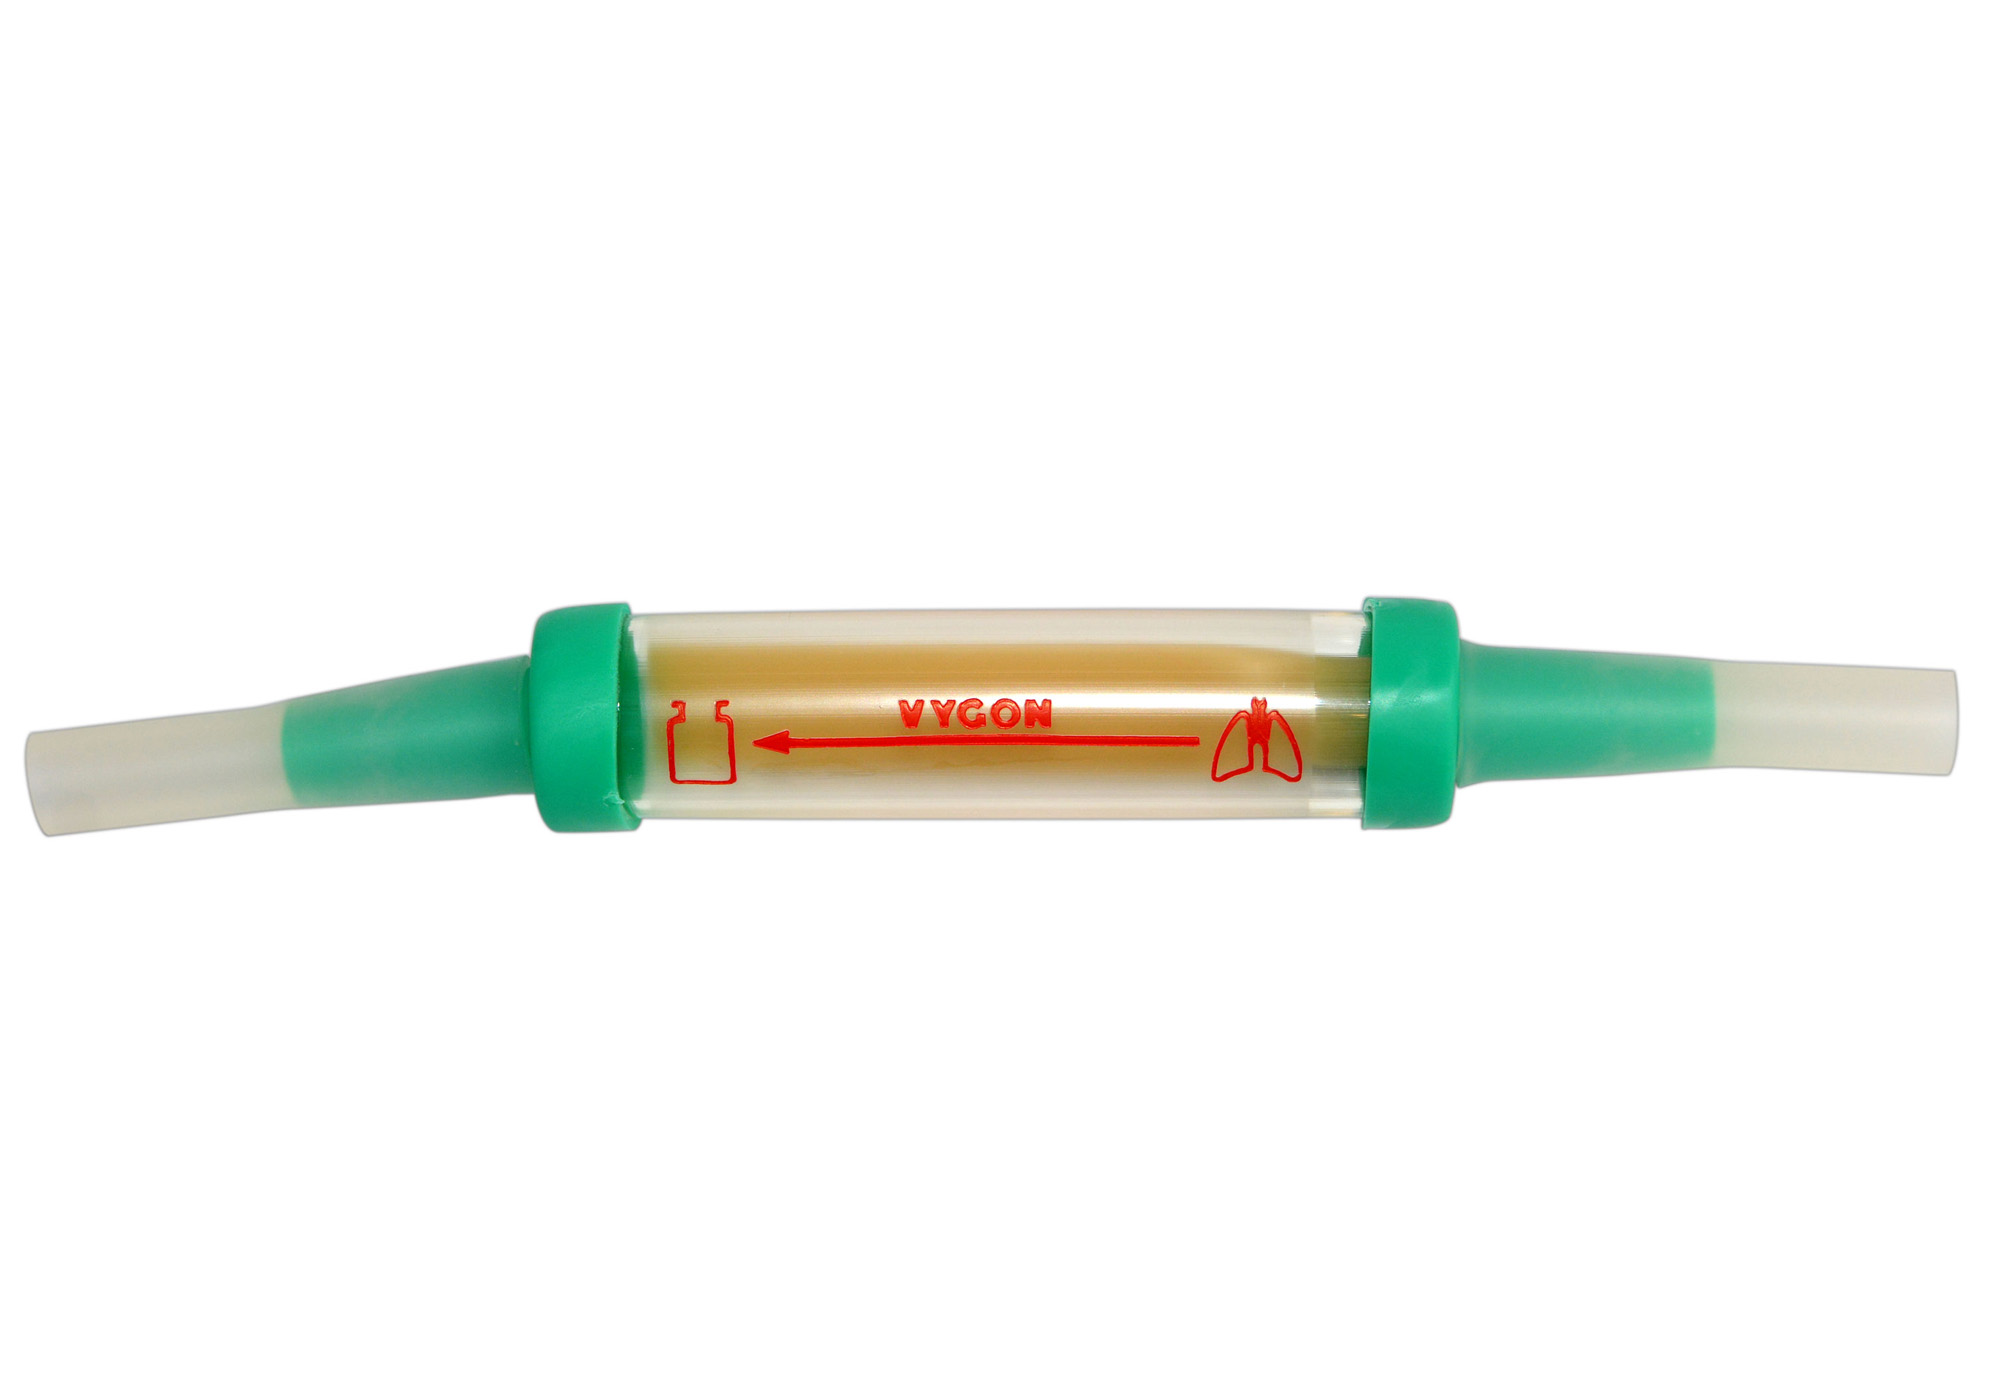 valve d'aspiration unique pour le drainage thoracique type Heimlich - stérile - 25 pcs